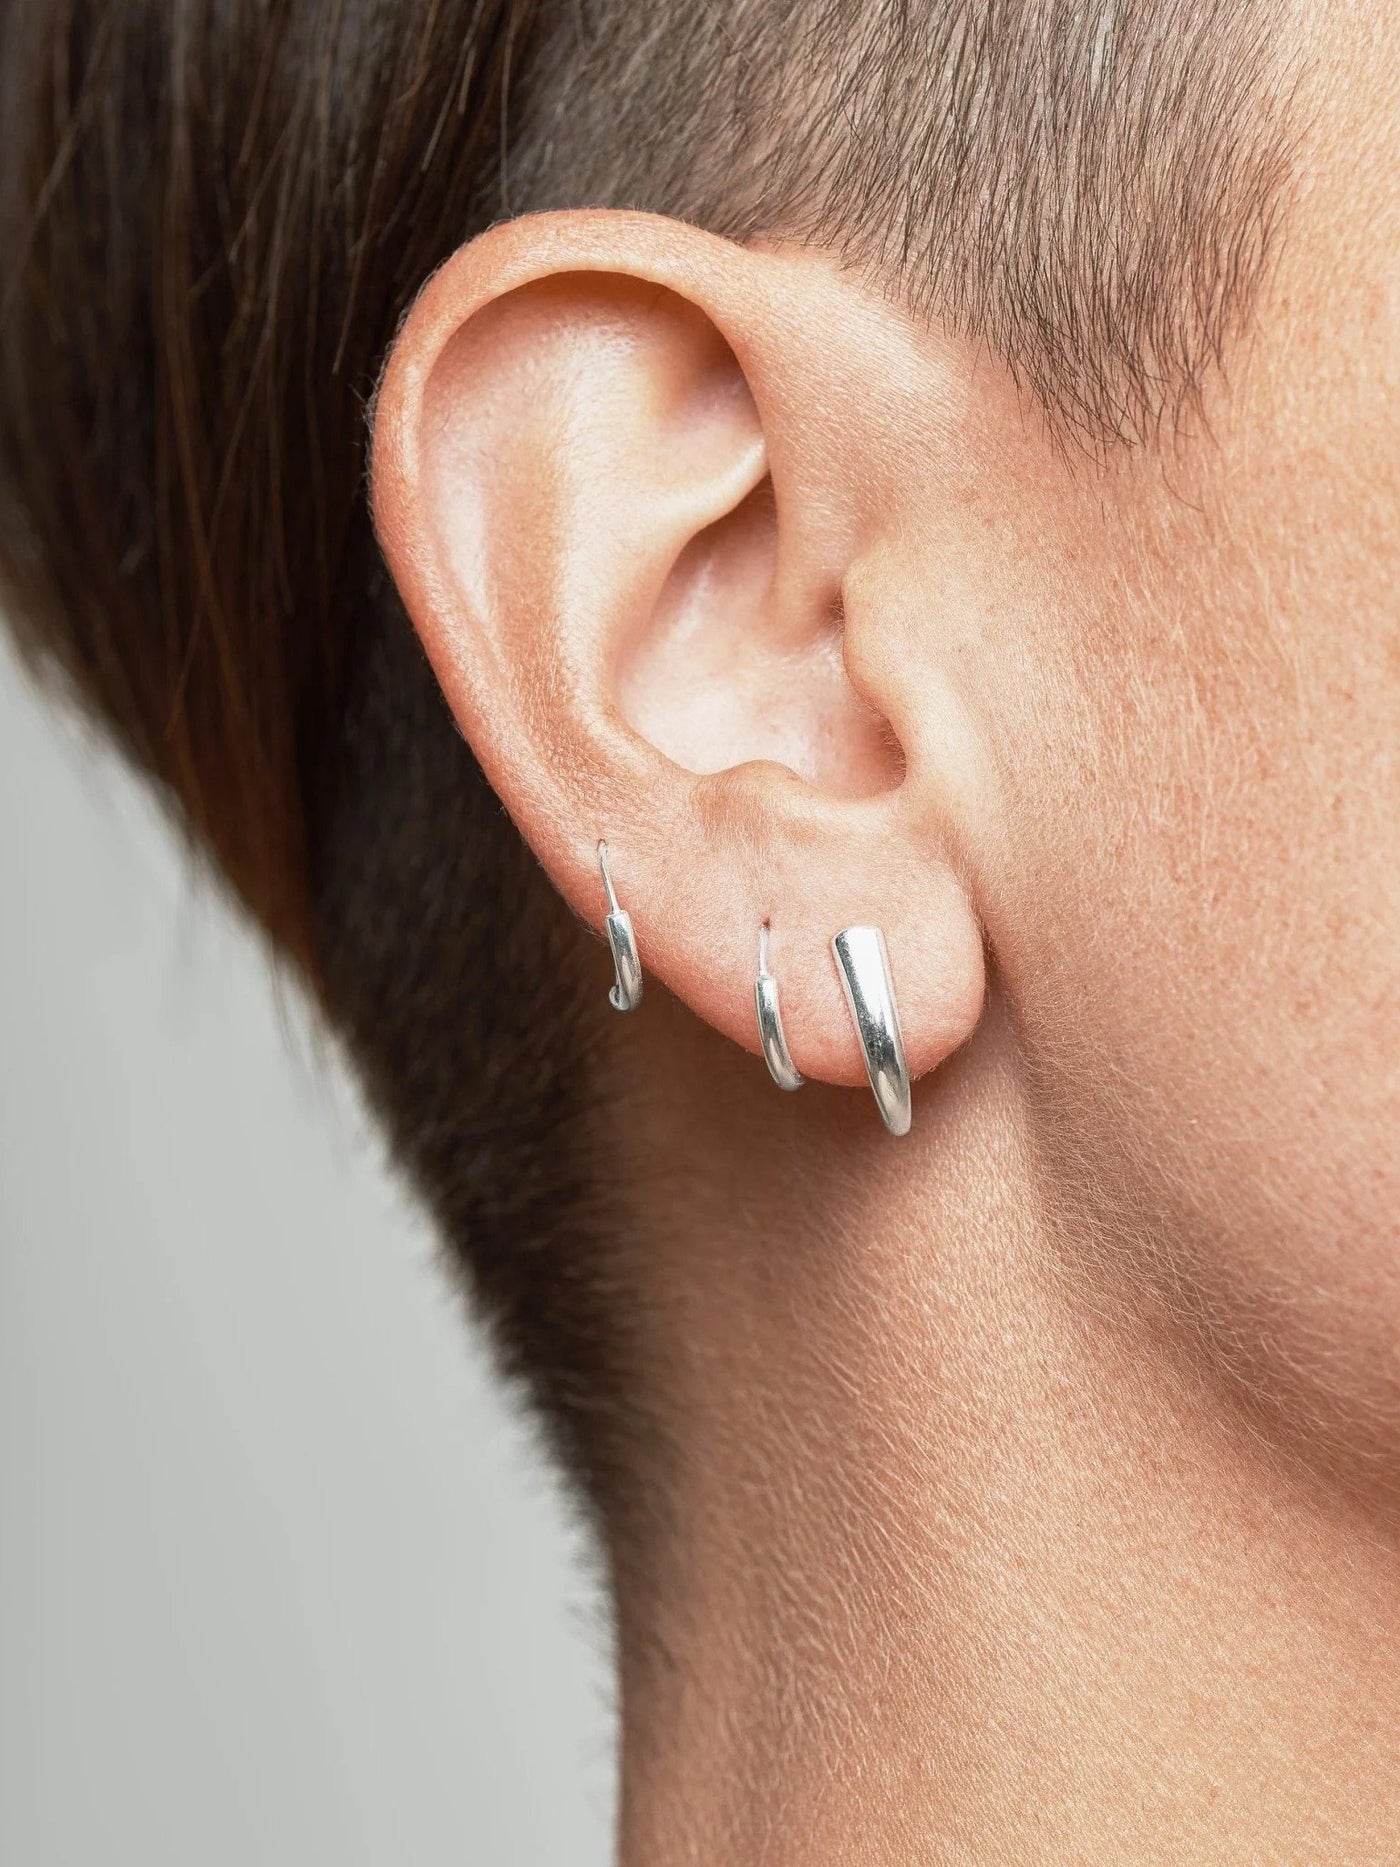 Tusk Stud Earring - 925 Sterling SilverBackUpItemsBridesmaid GiftLunai Jewelry